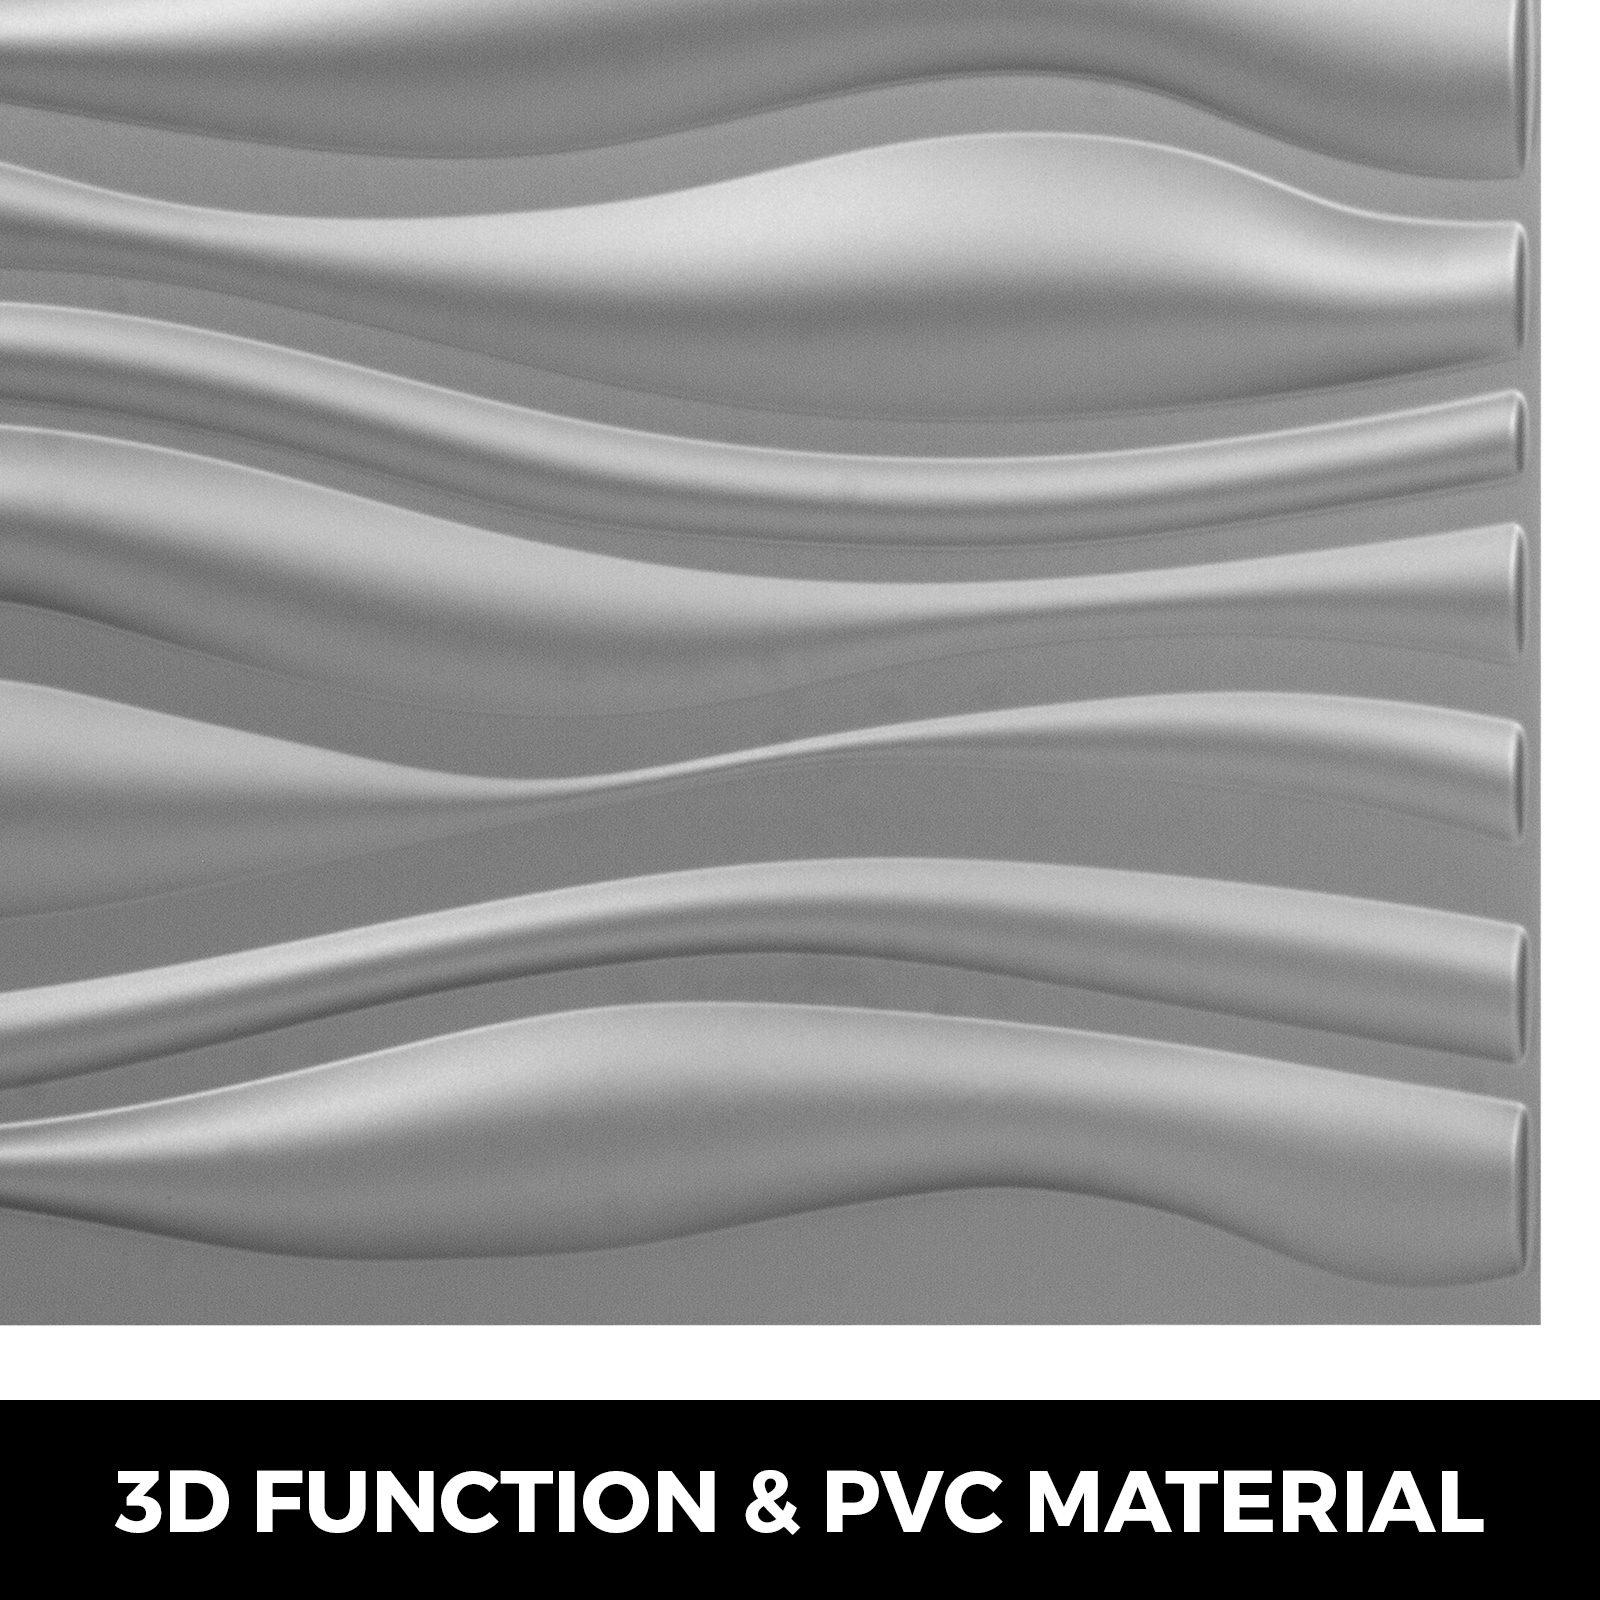 PVC Wall Panels 13 Tiles 3D Art Textured Design 19.7"x19.7" Waterproof Bricks 